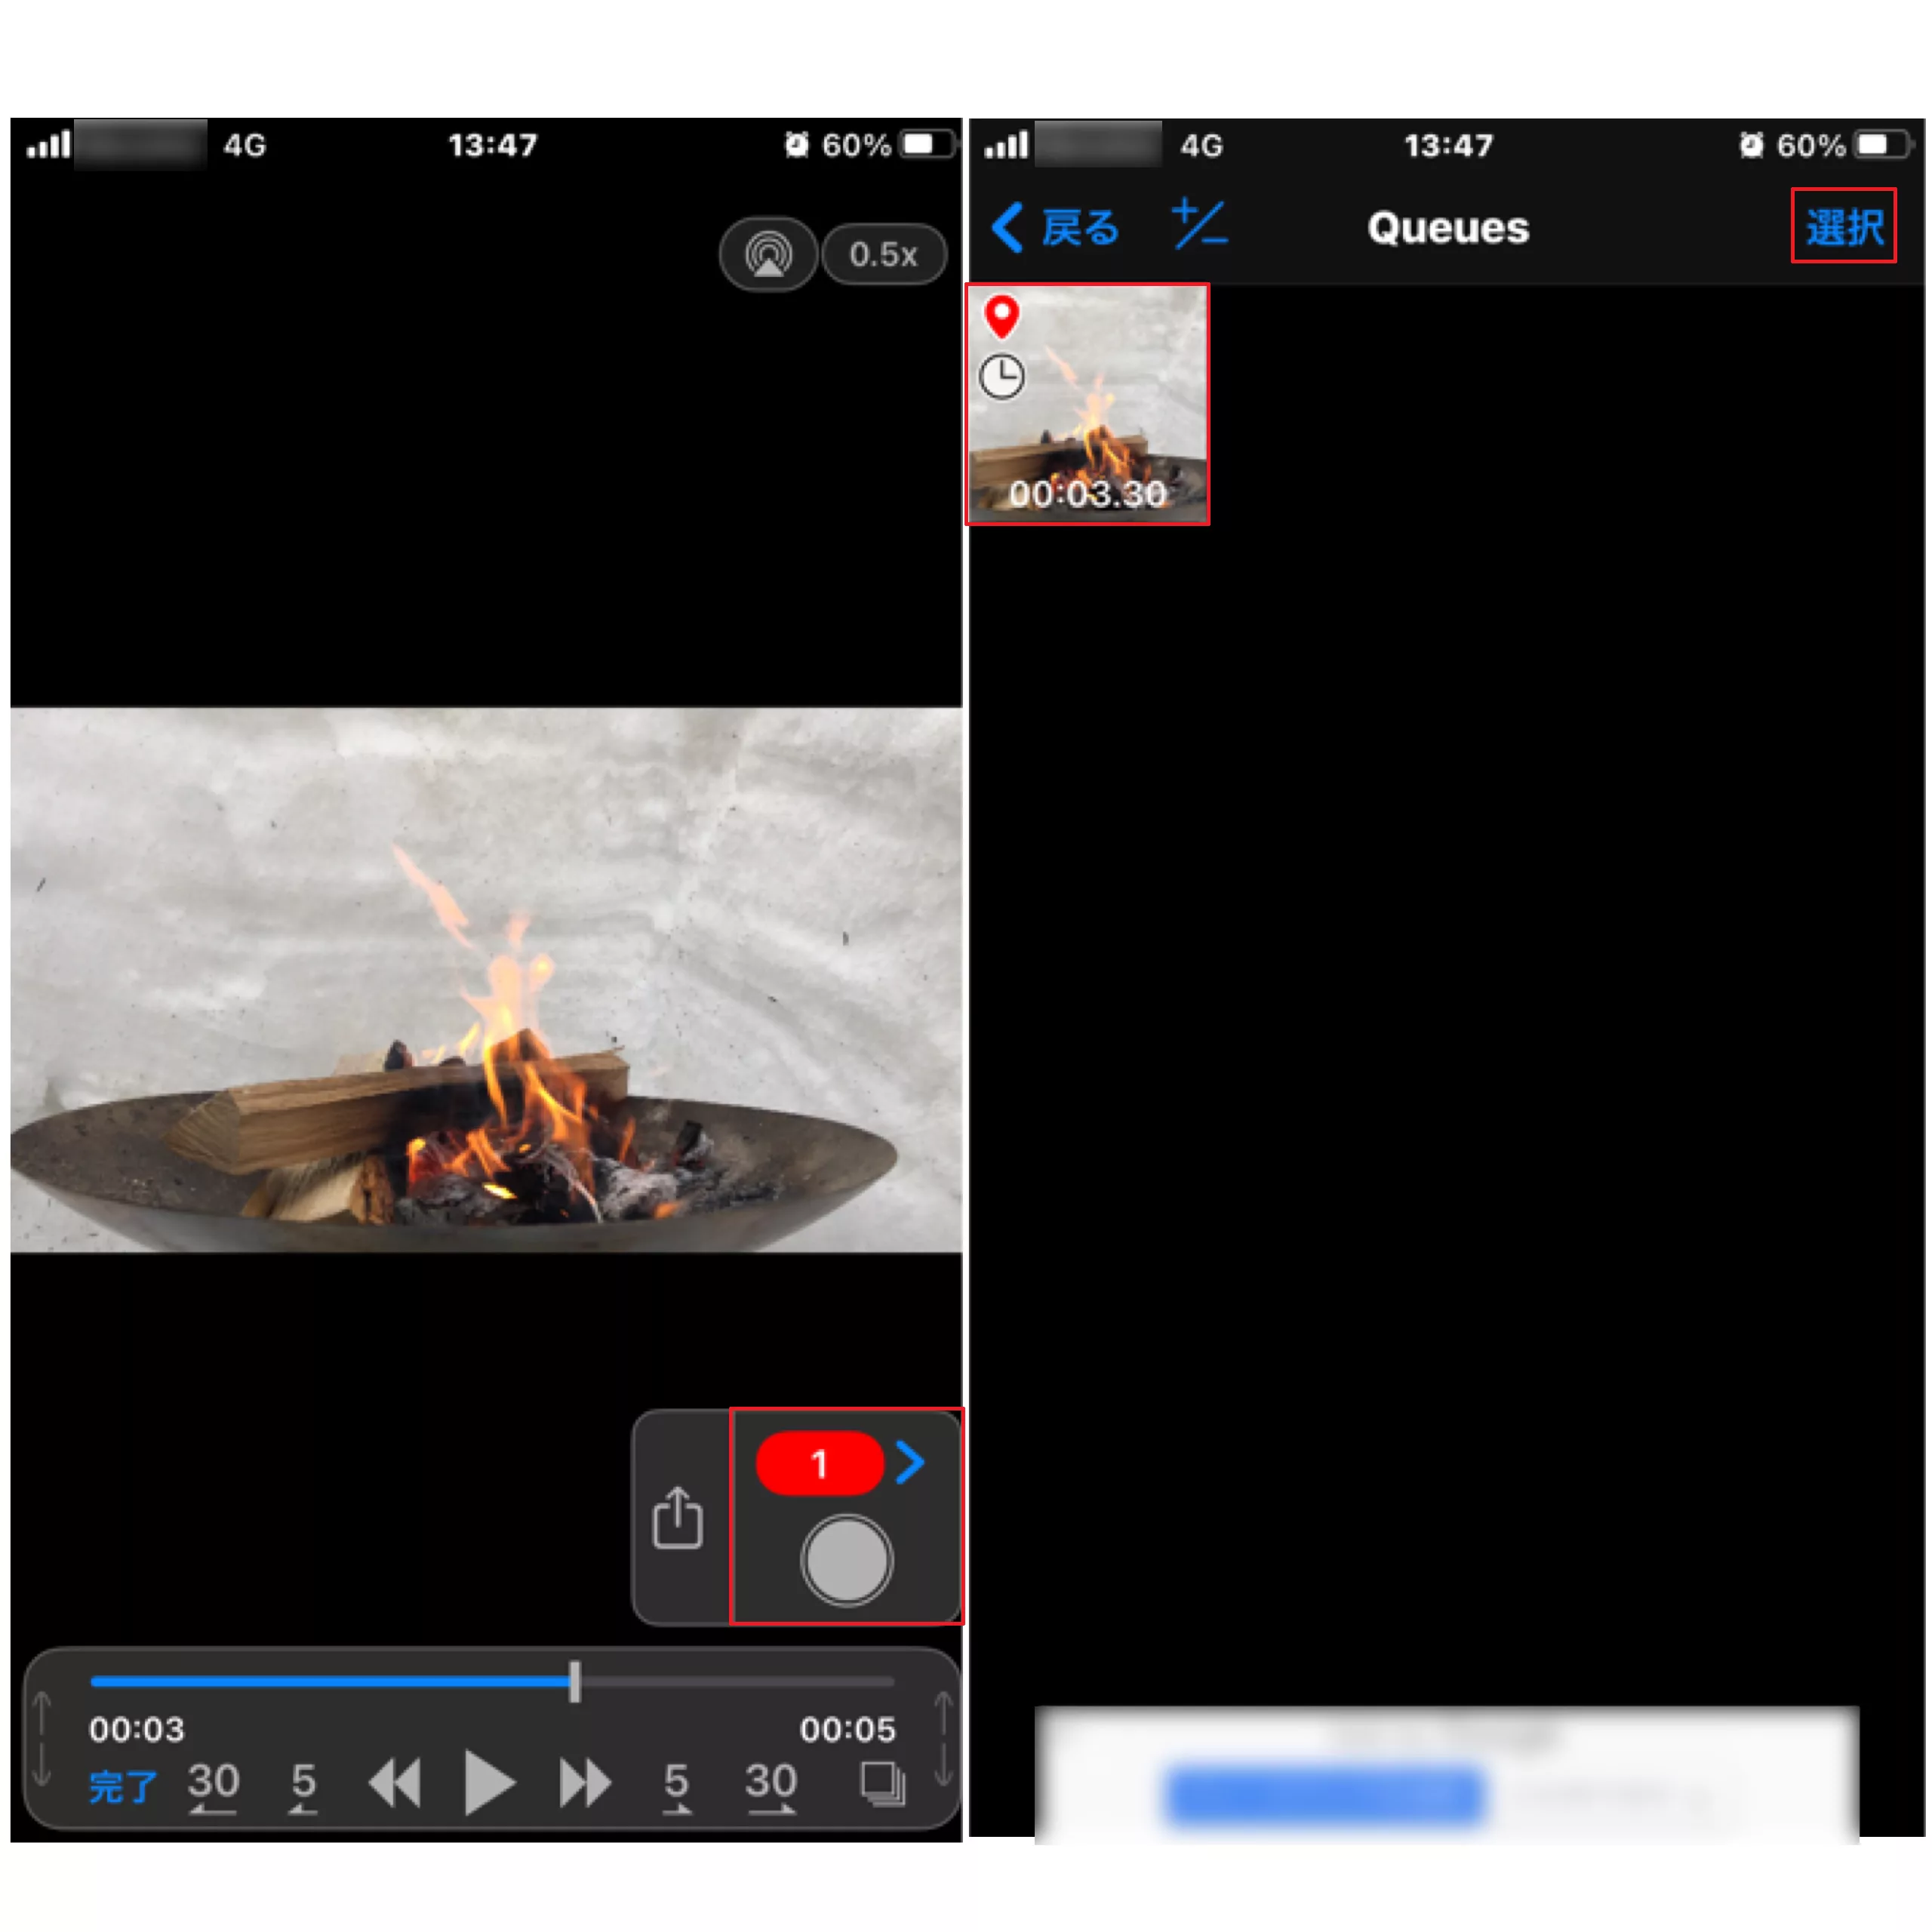 焚き火の思い出 残せてますか Iphoneで綺麗な焚き火写真を撮影する方法 焚き火のコツ Be Pal キャンプ アウトドア 自然派生活の情報源ビーパル